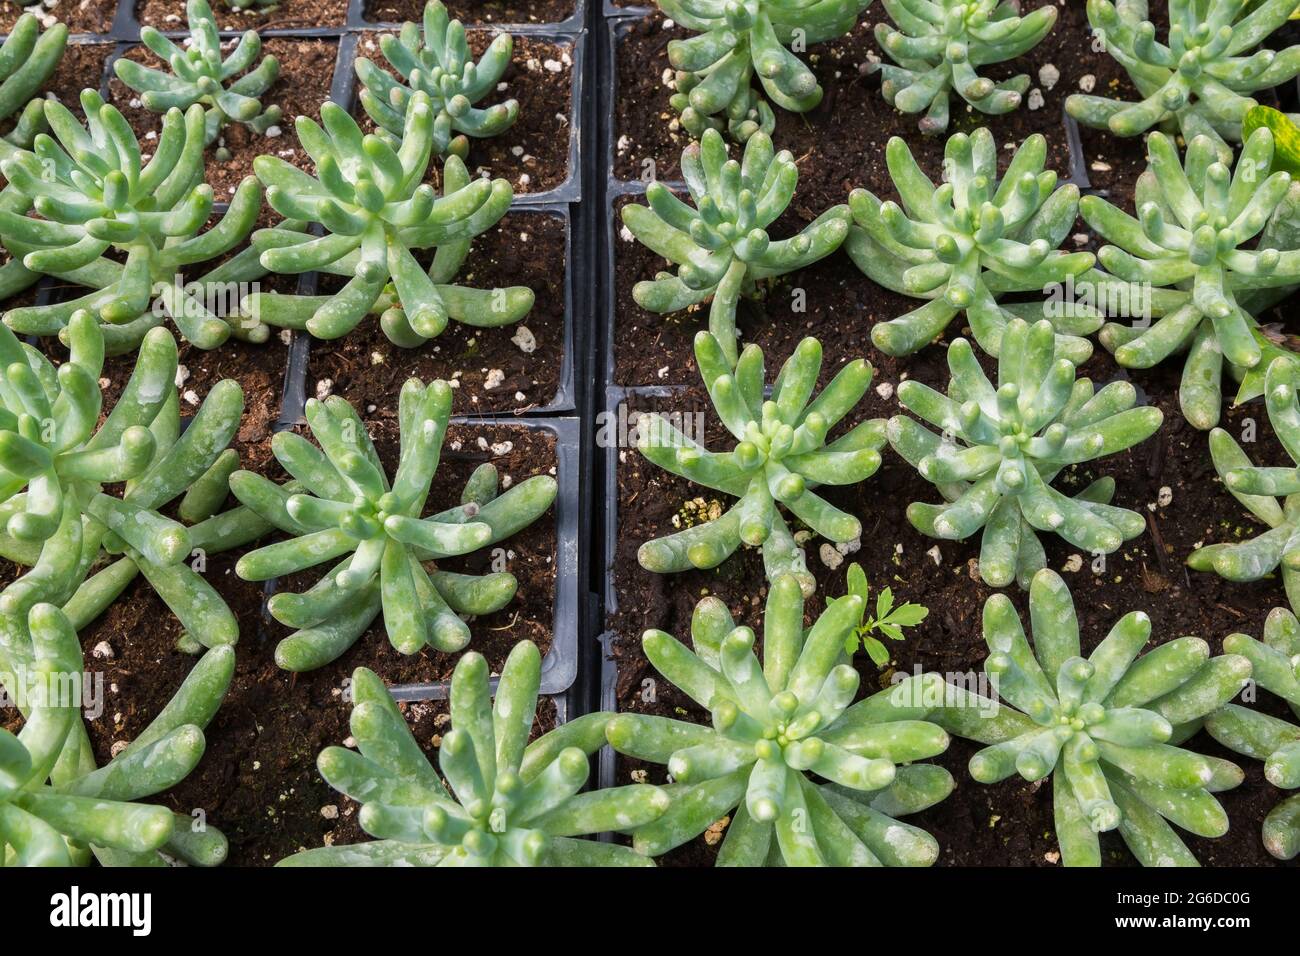 Pachyphytum compactum - plantes succulentes compactes 'Thick Plant' poussant dans des récipients en plastique à l'intérieur d'une serre Banque D'Images